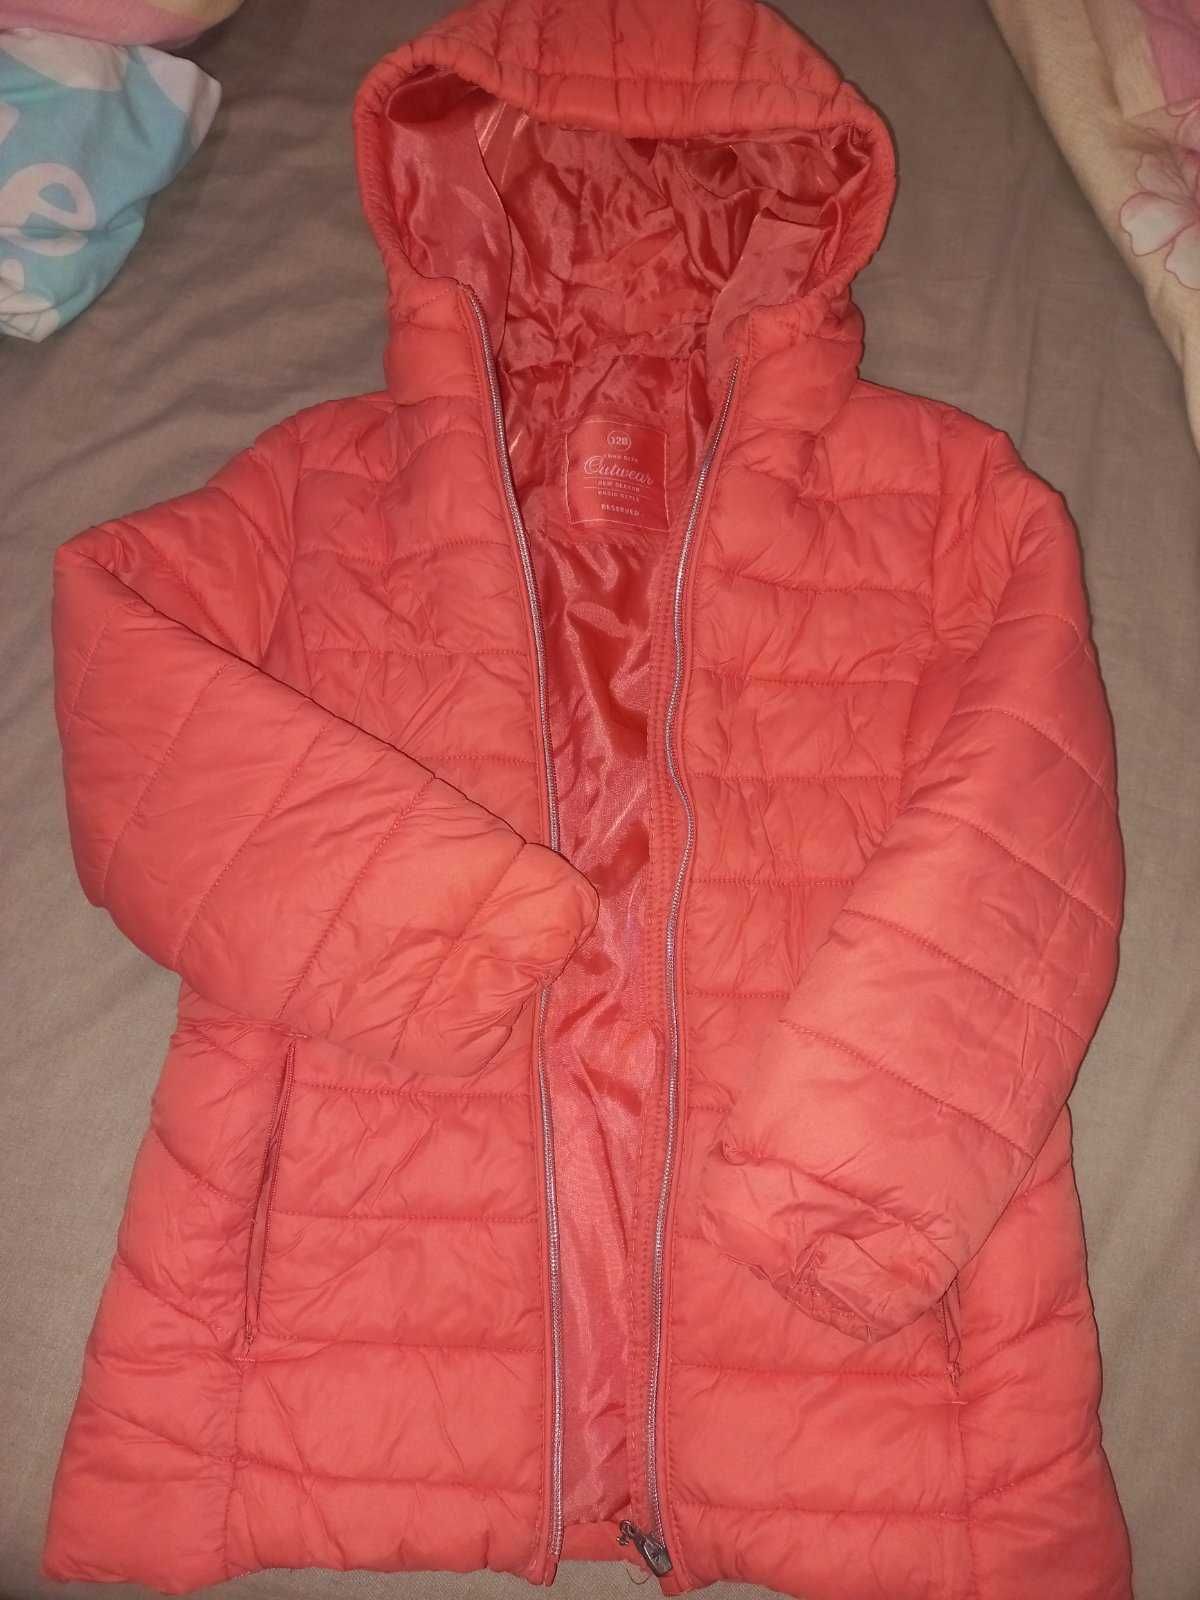 Коралова (помаранчева)куртка на дівчинку 4-6 років